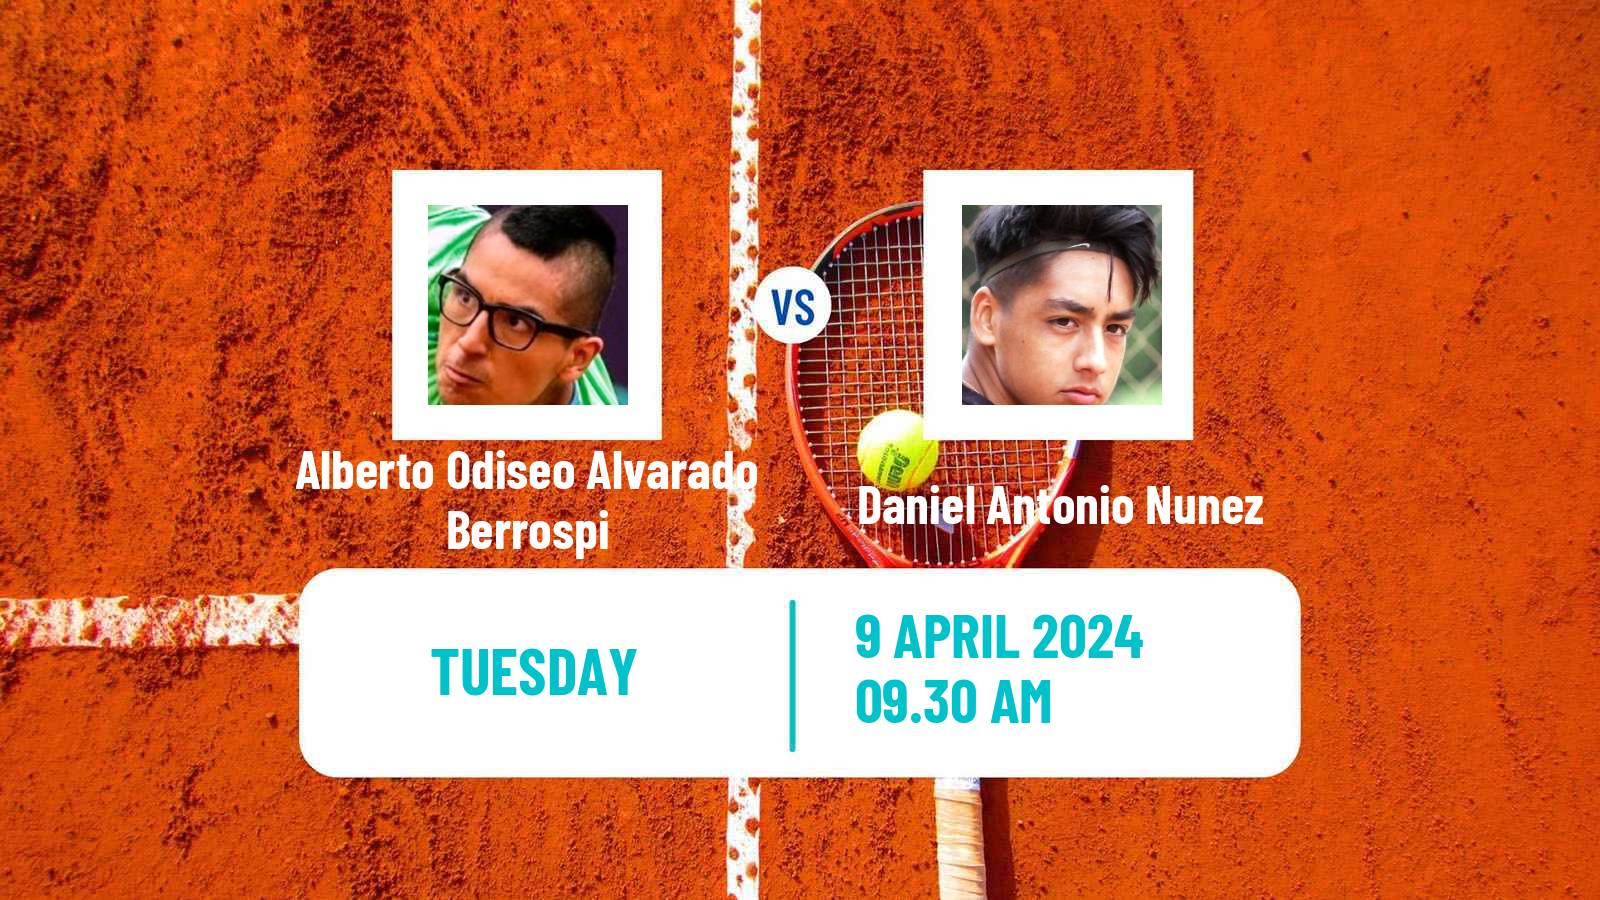 Tennis ITF M15 Quillota Men Alberto Odiseo Alvarado Berrospi - Daniel Antonio Nunez